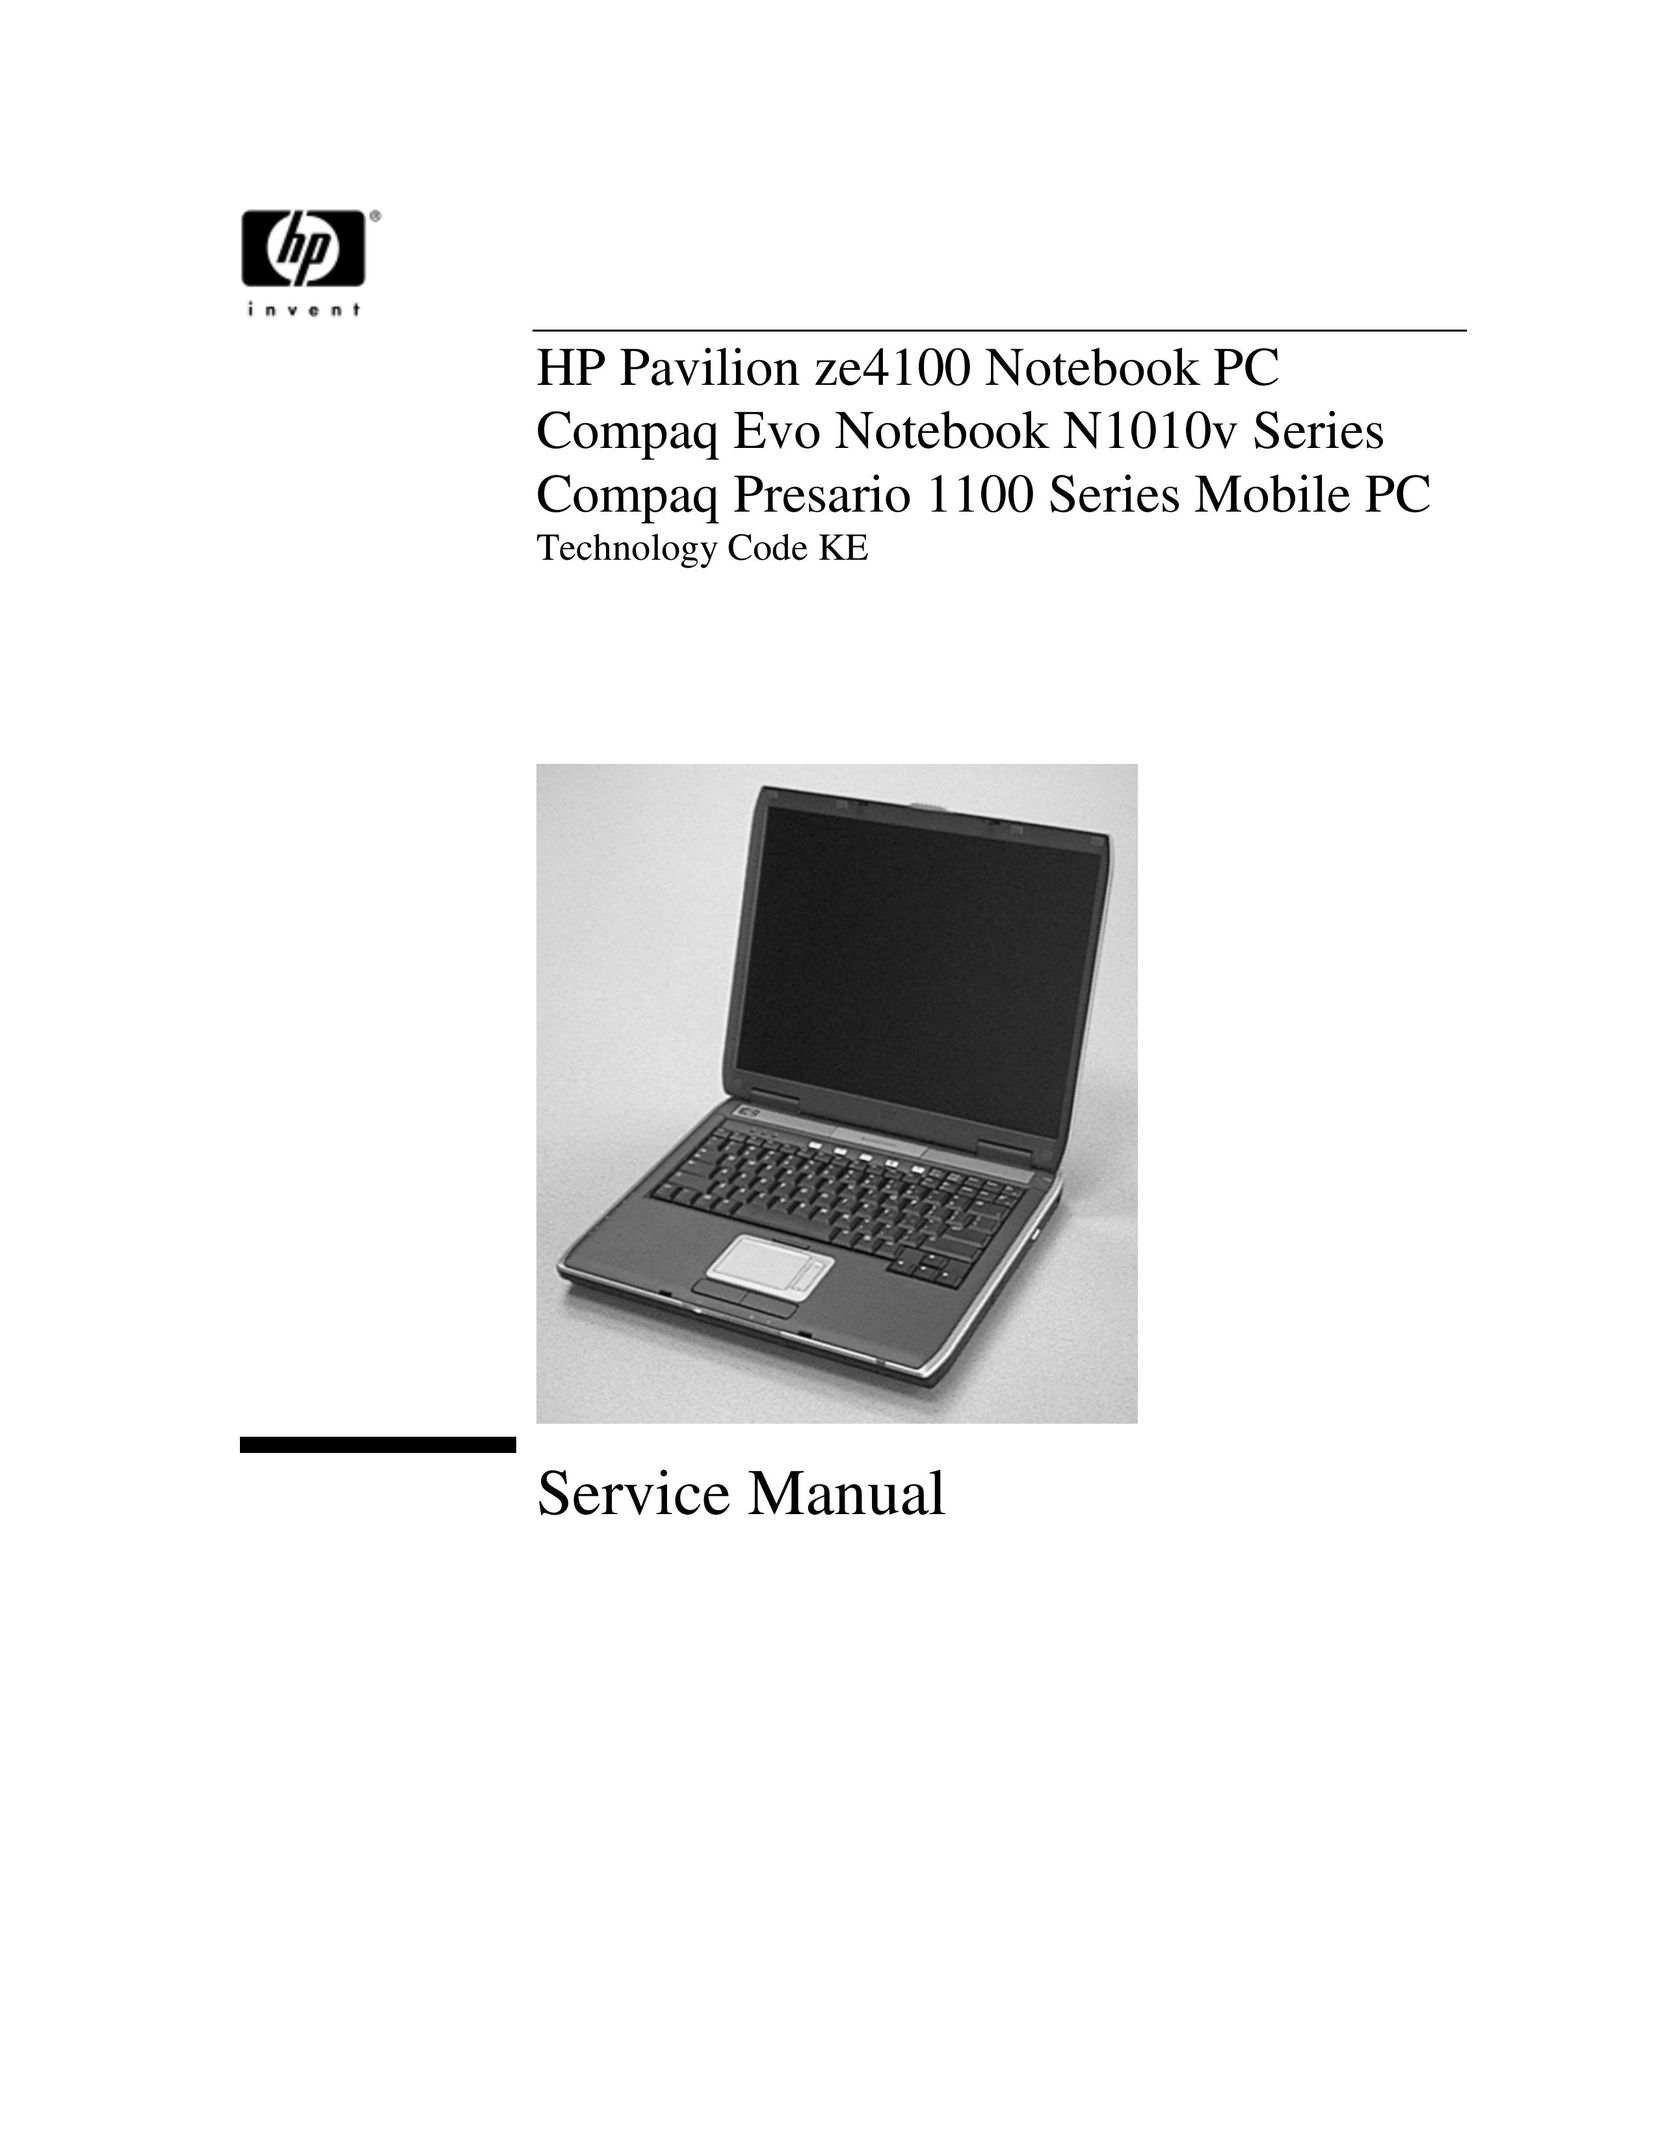 HP (Hewlett-Packard) 1100 Laptop User Manual